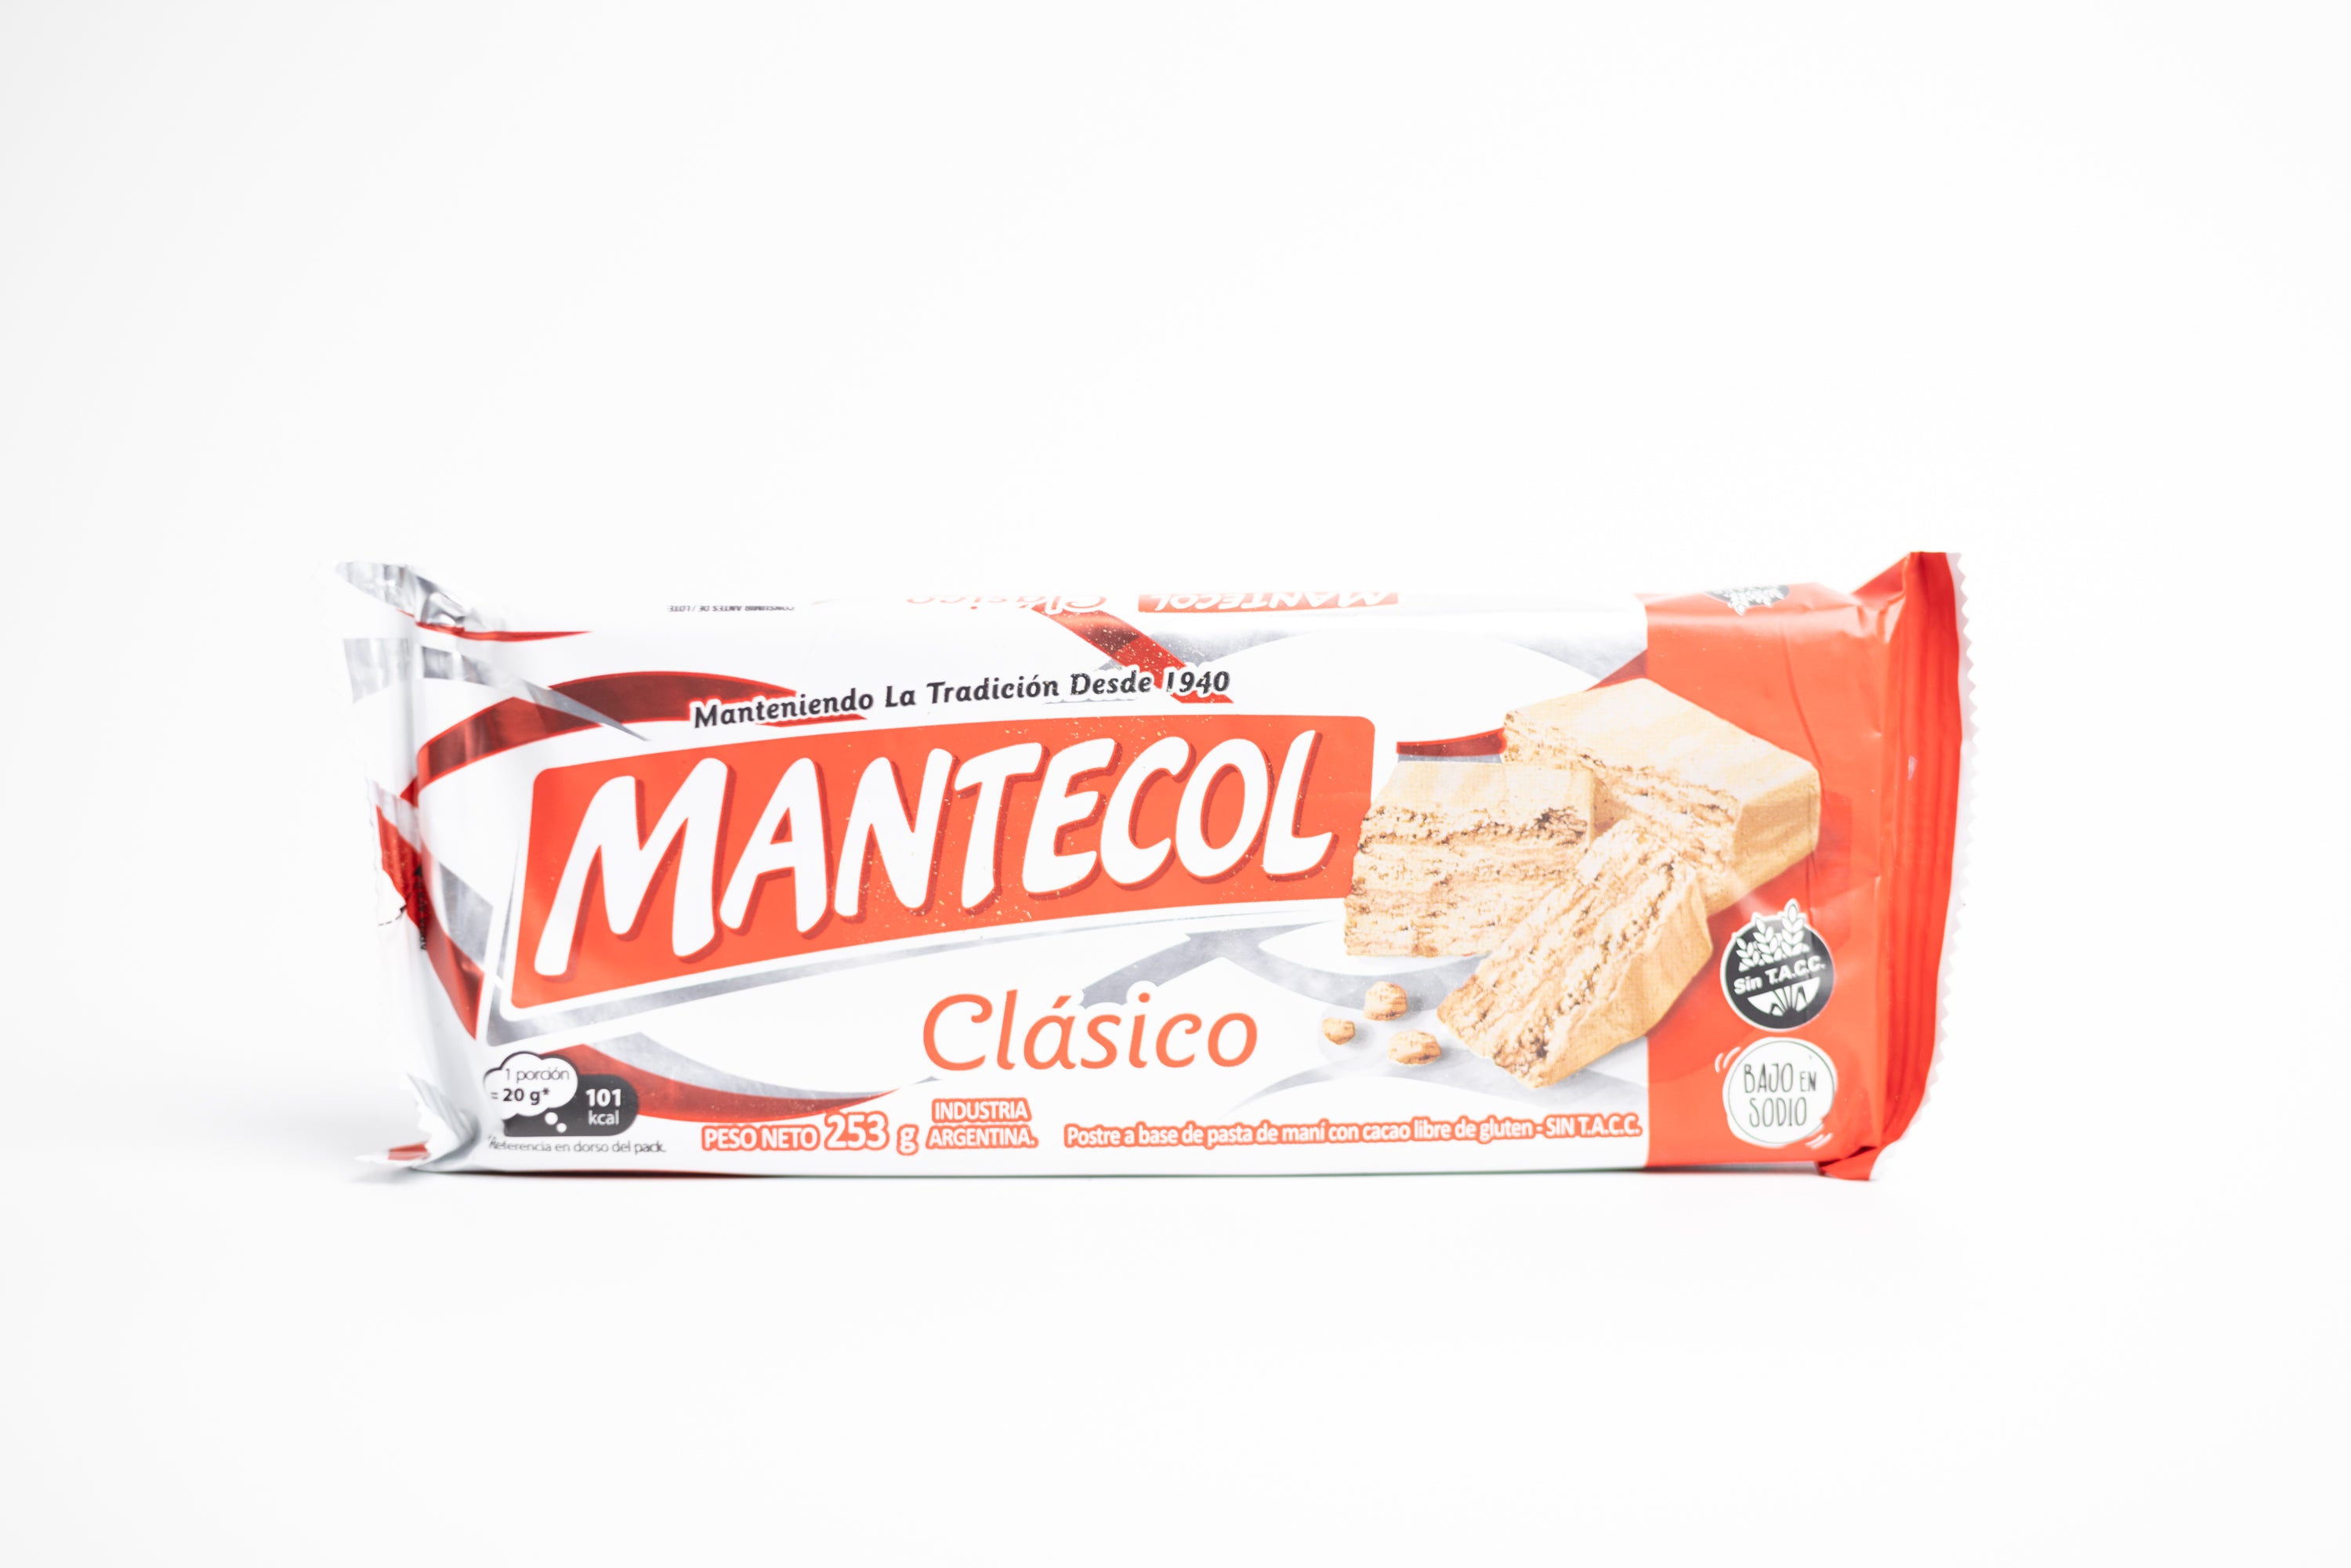 Mantecol Clasico